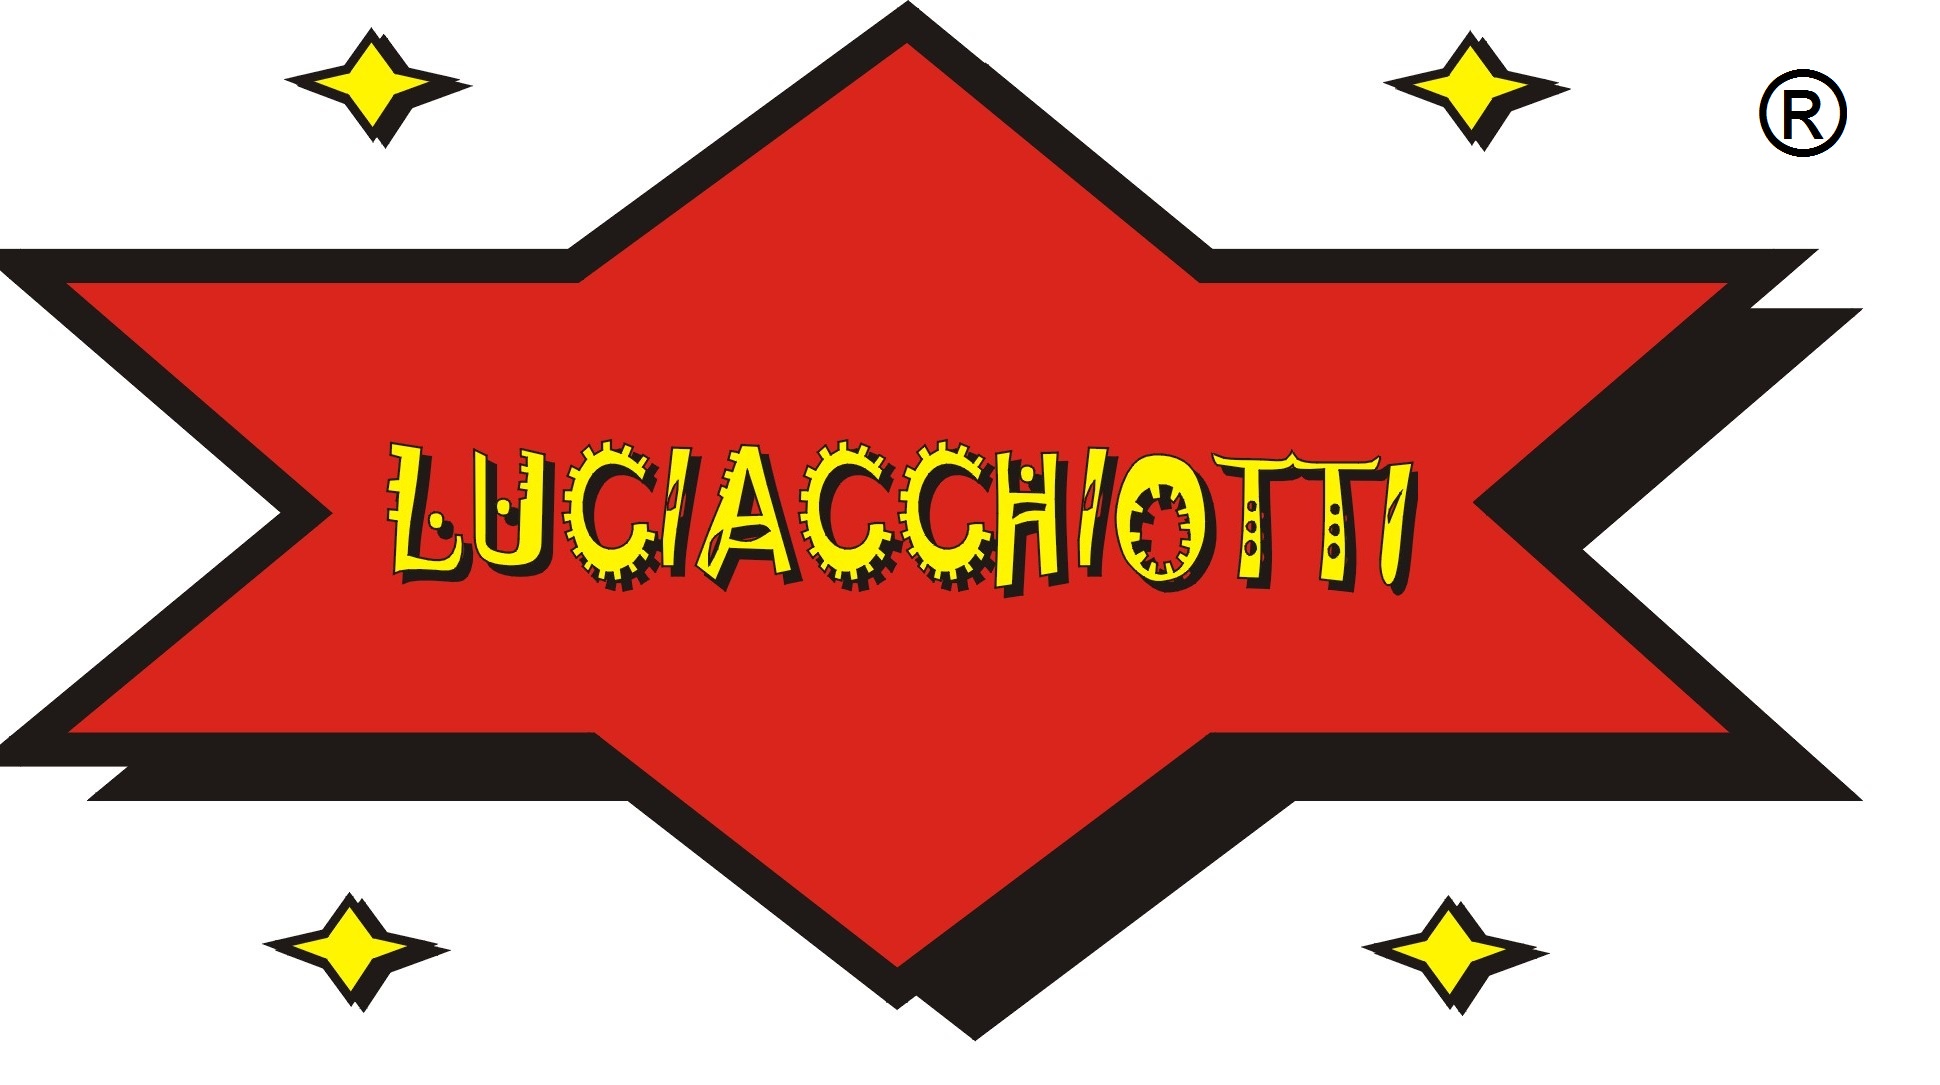 Marchio Luciacchiotti